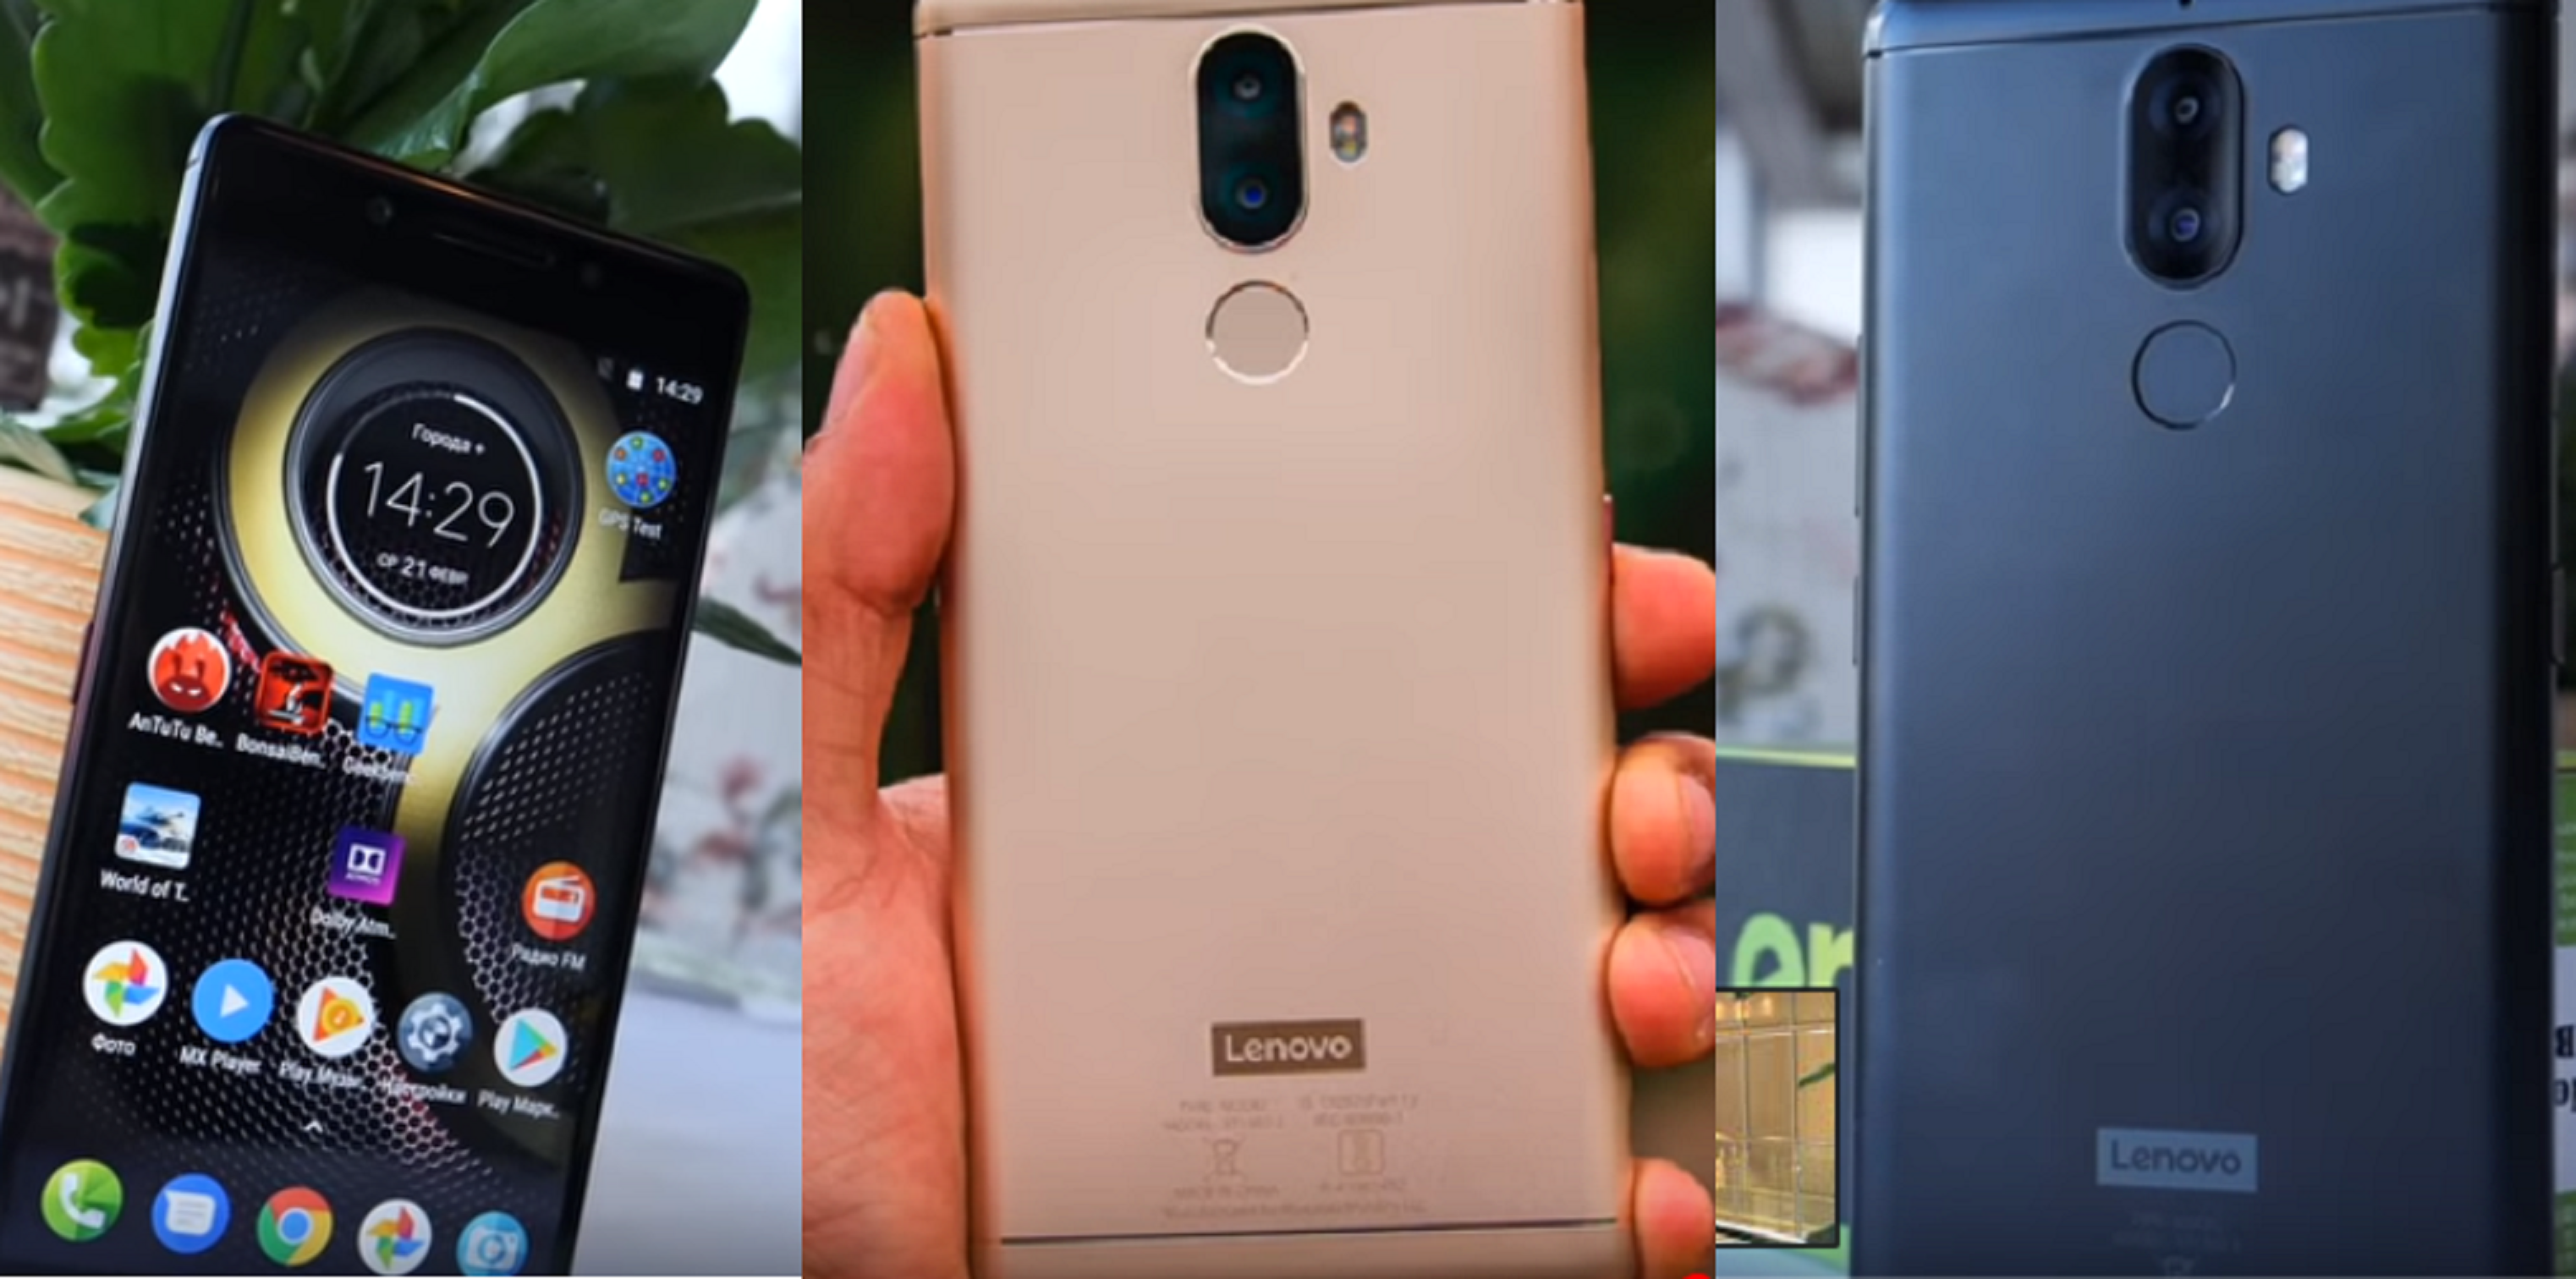 Telefon pintar Lenovo K8 Note 64GB - kelebihan dan kekurangan